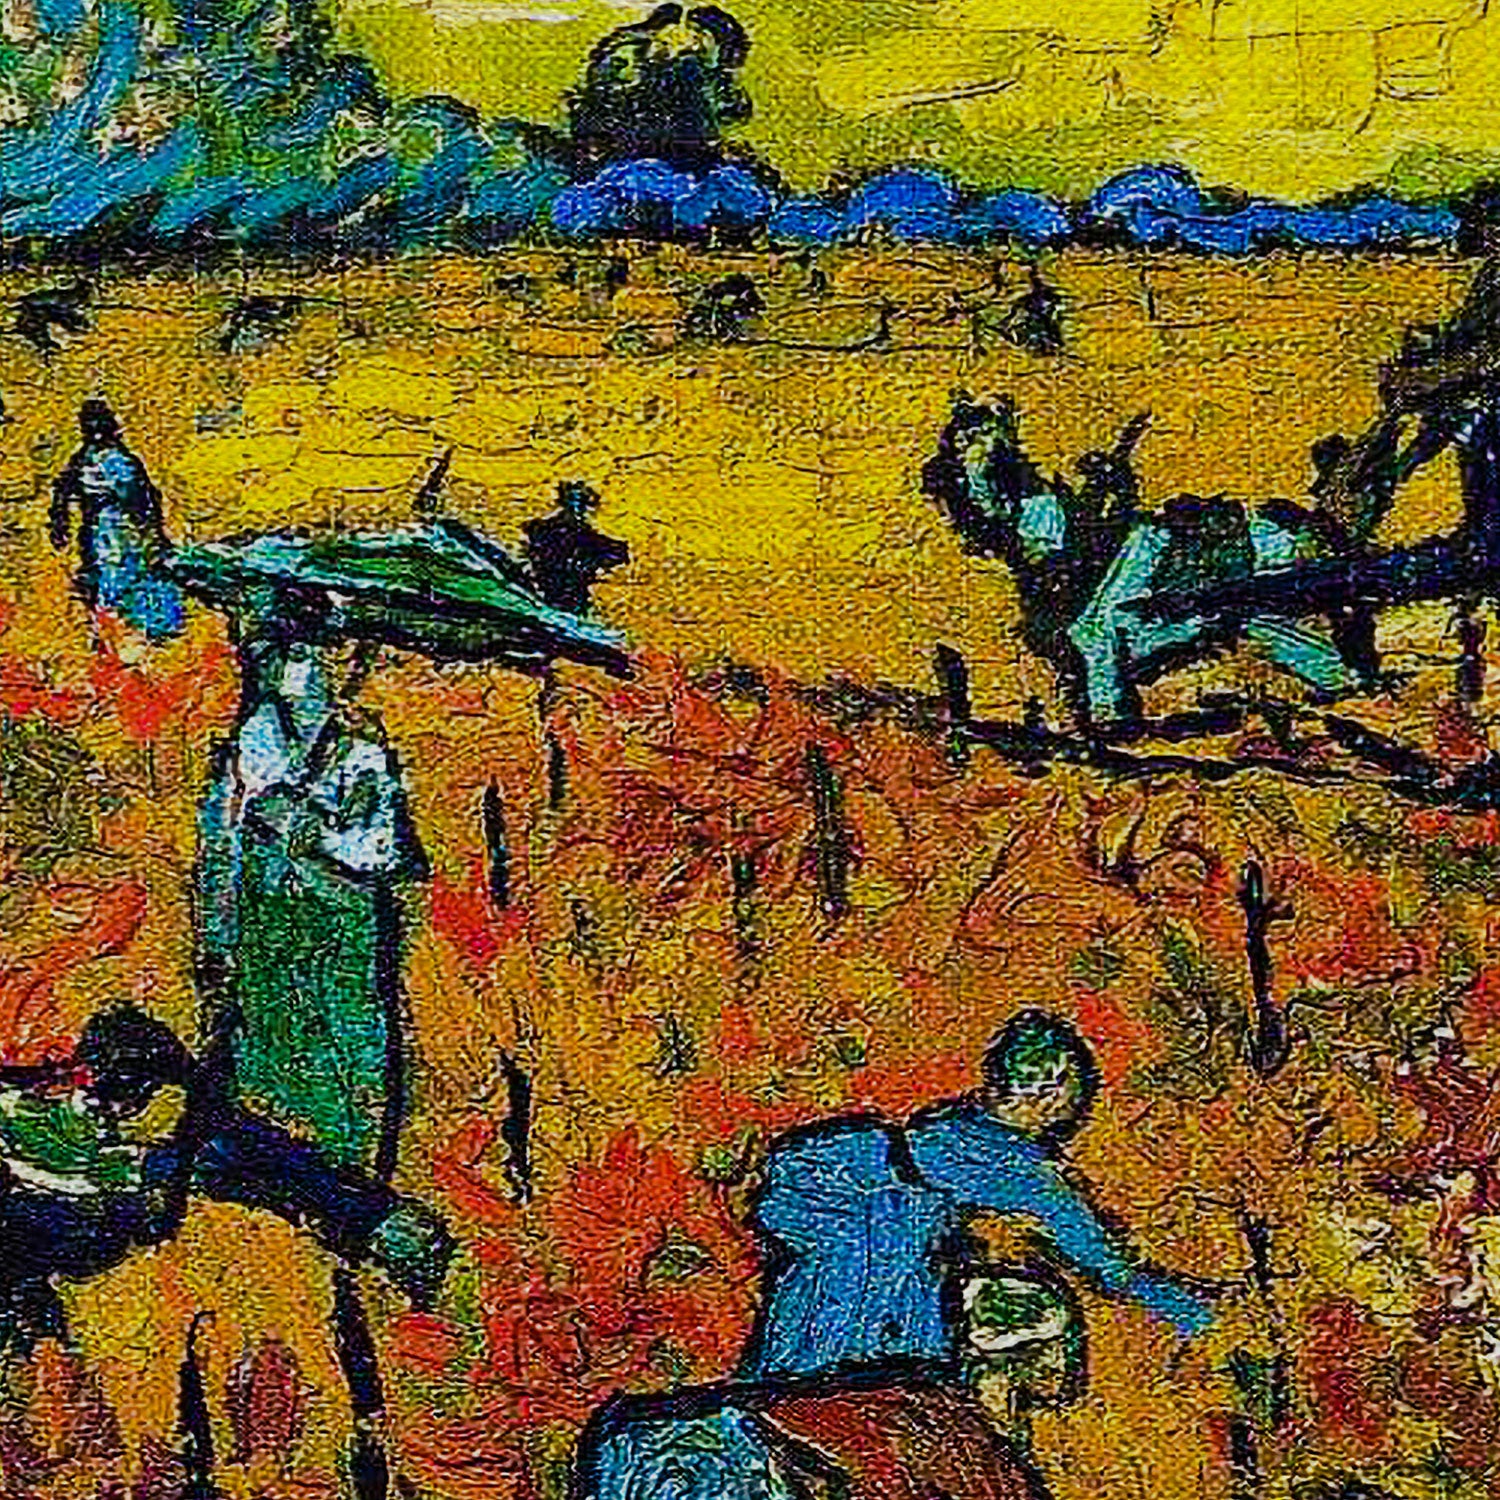 Vincent van Gogh Red Vineyards At Arles Canvas Wall Art